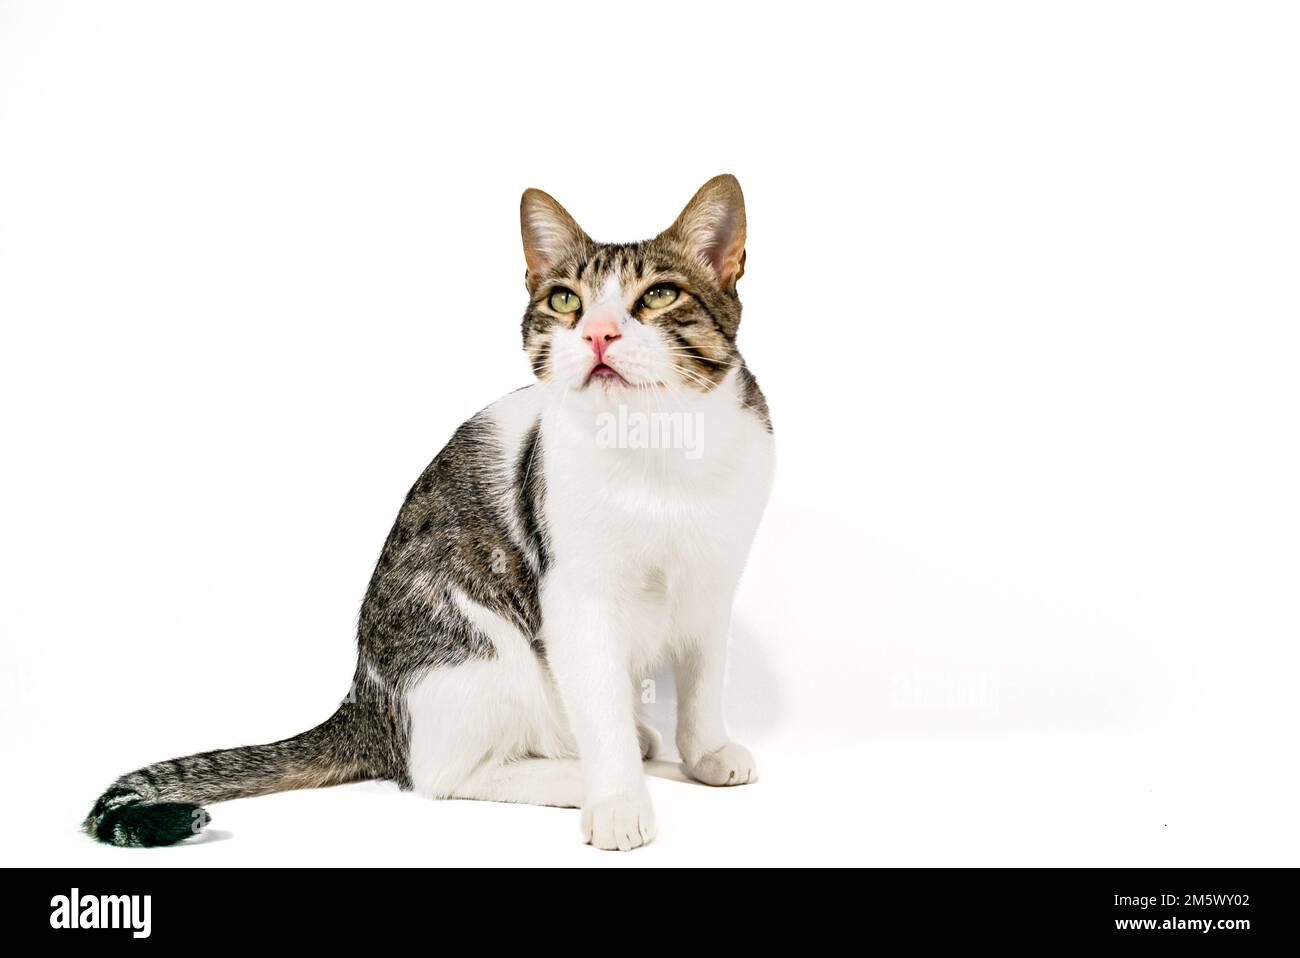 Schläfrige streunende, gestreifte Vogel-Katze, die sich hinsetzt und die Kamera auf weißem Hintergrund betrachtet. Slow Motion Video Grain-Effekt angewendet. Gestreiftes Haustier. Stockfoto